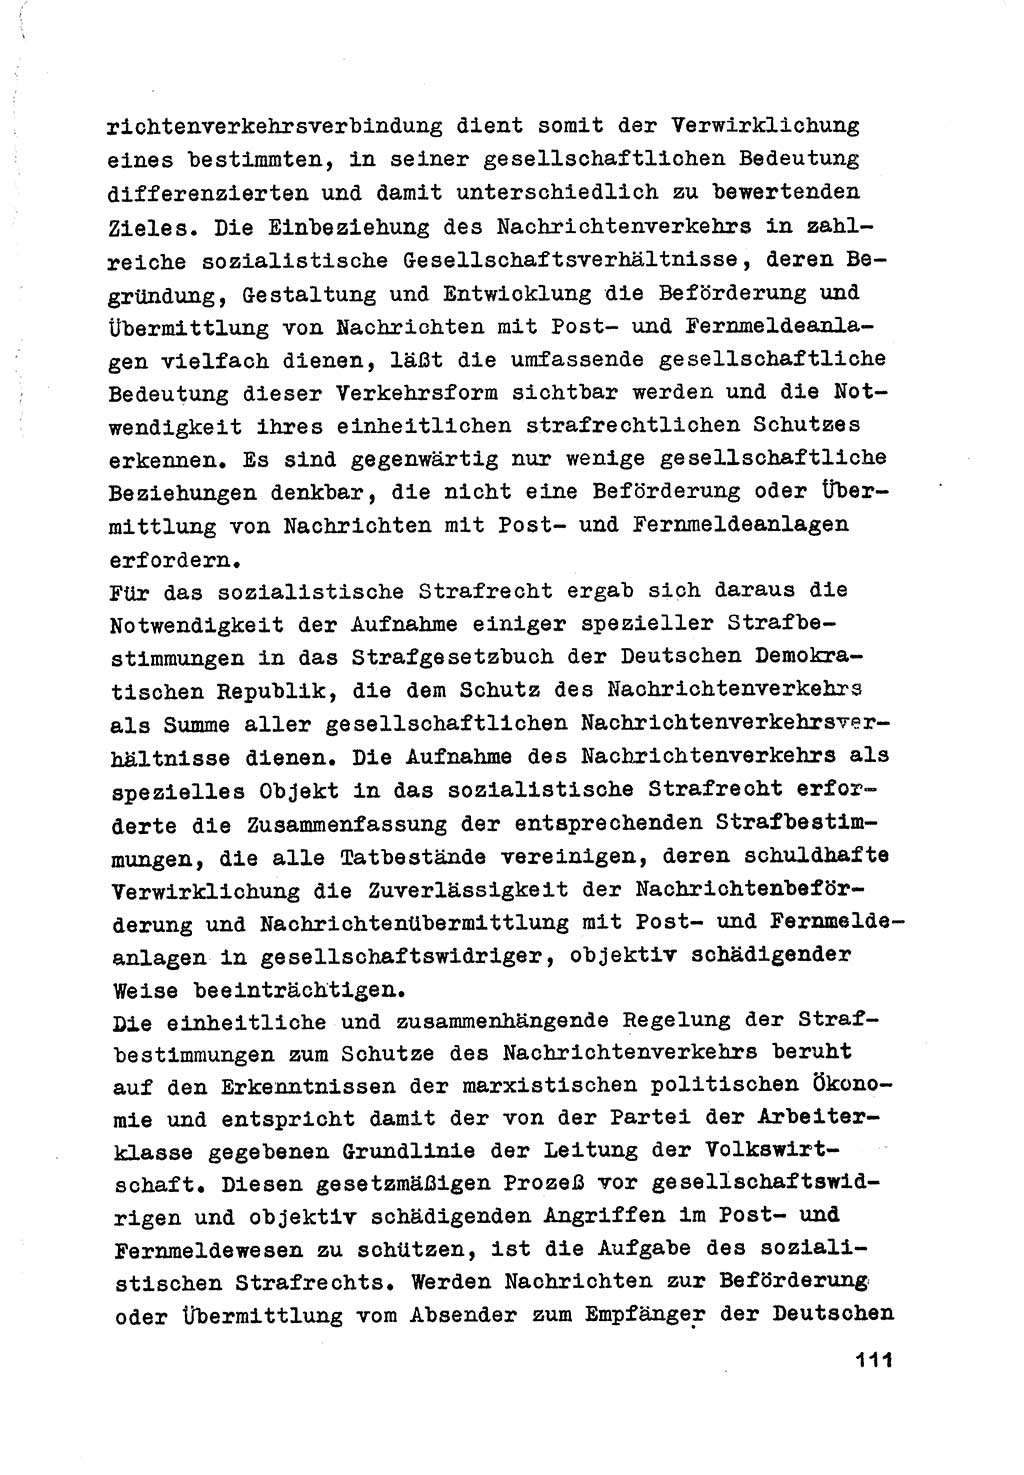 Strafrecht der DDR (Deutsche Demokratische Republik), Besonderer Teil, Lehrmaterial, Heft 7 1970, Seite 111 (Strafr. DDR BT Lehrmat. H. 7 1970, S. 111)